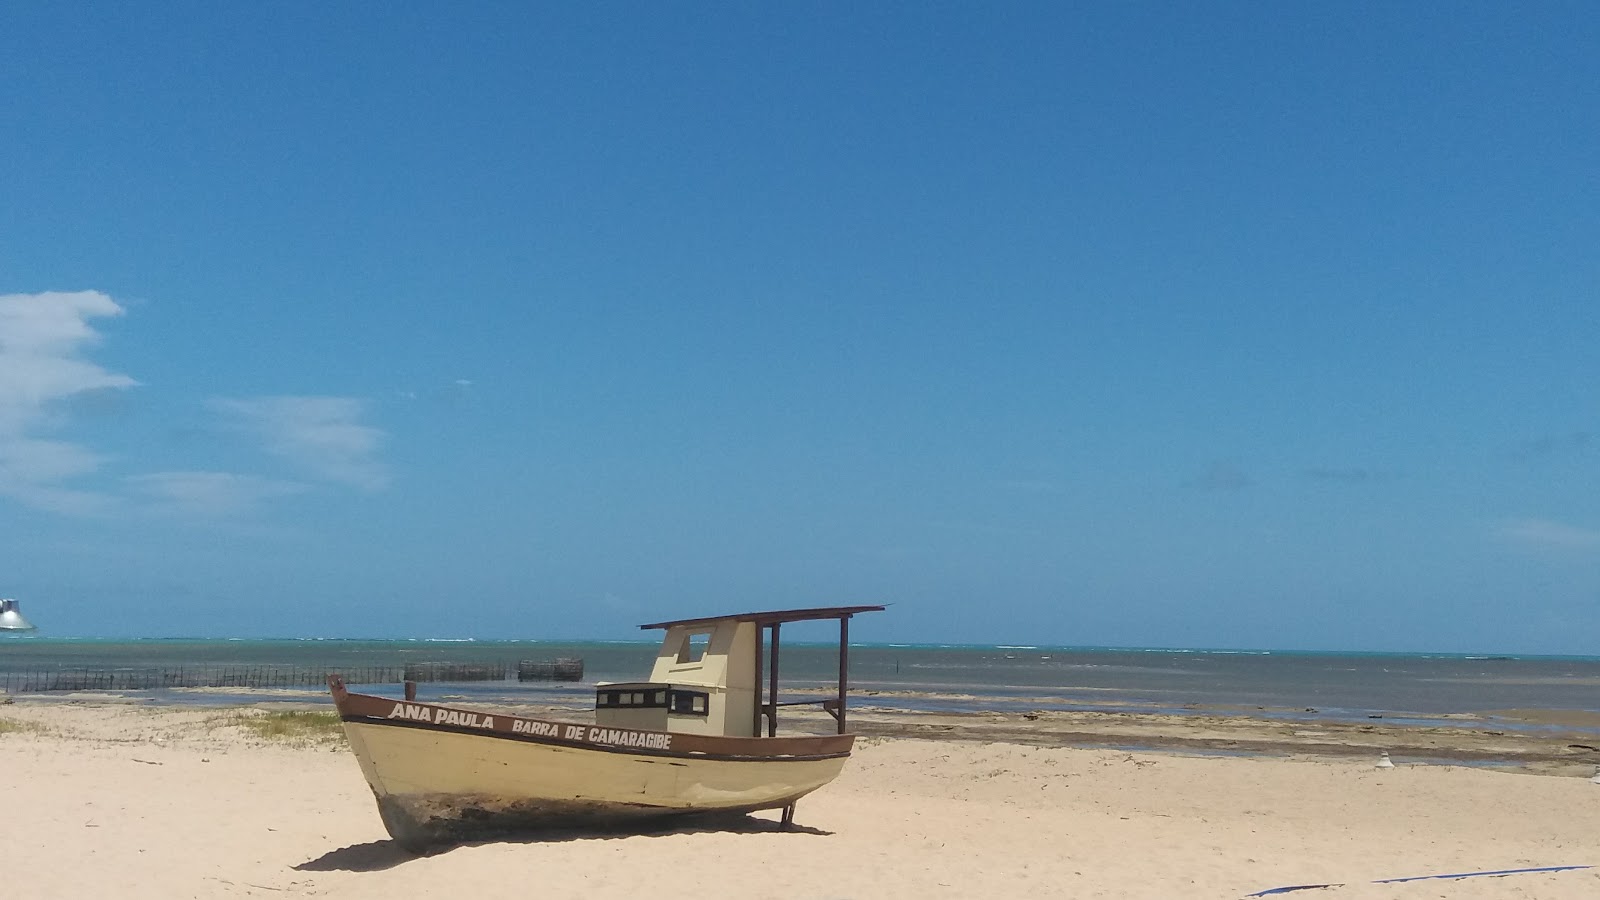 Fotografie cu Praia da Barra de Camaragibe zonele de facilități